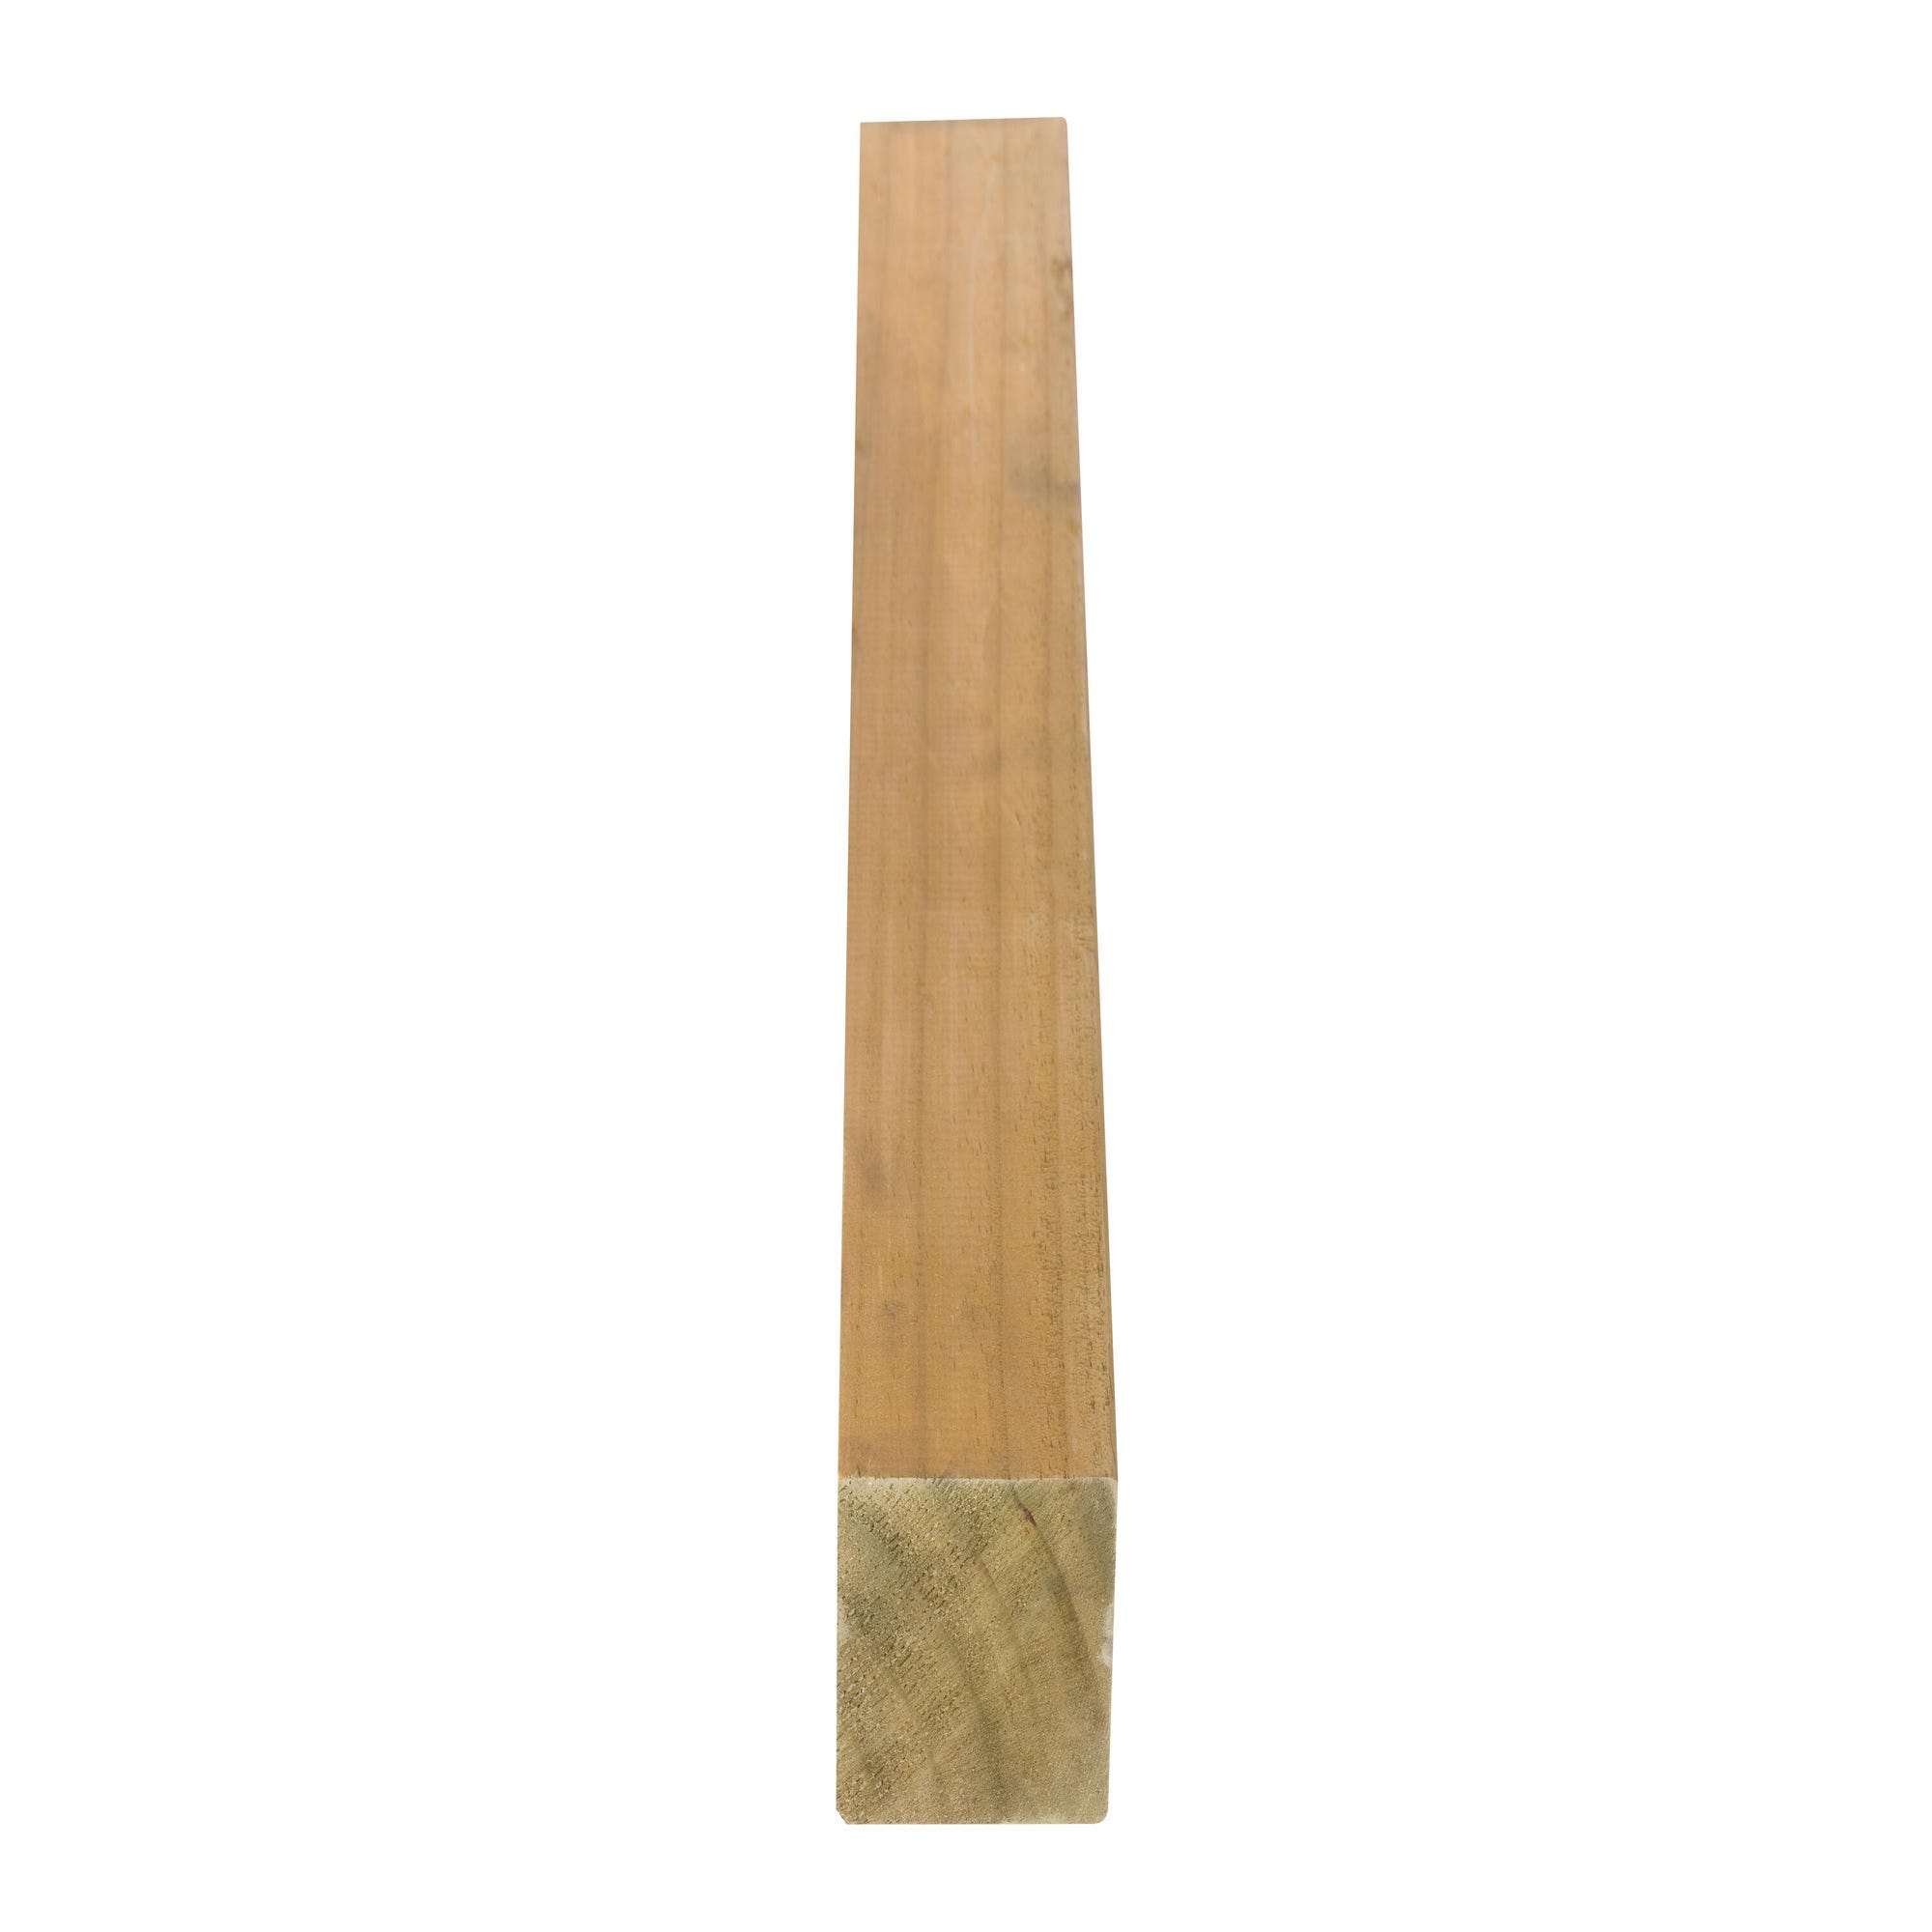 Poste para valla de madera maciza de 7x7x120 cm